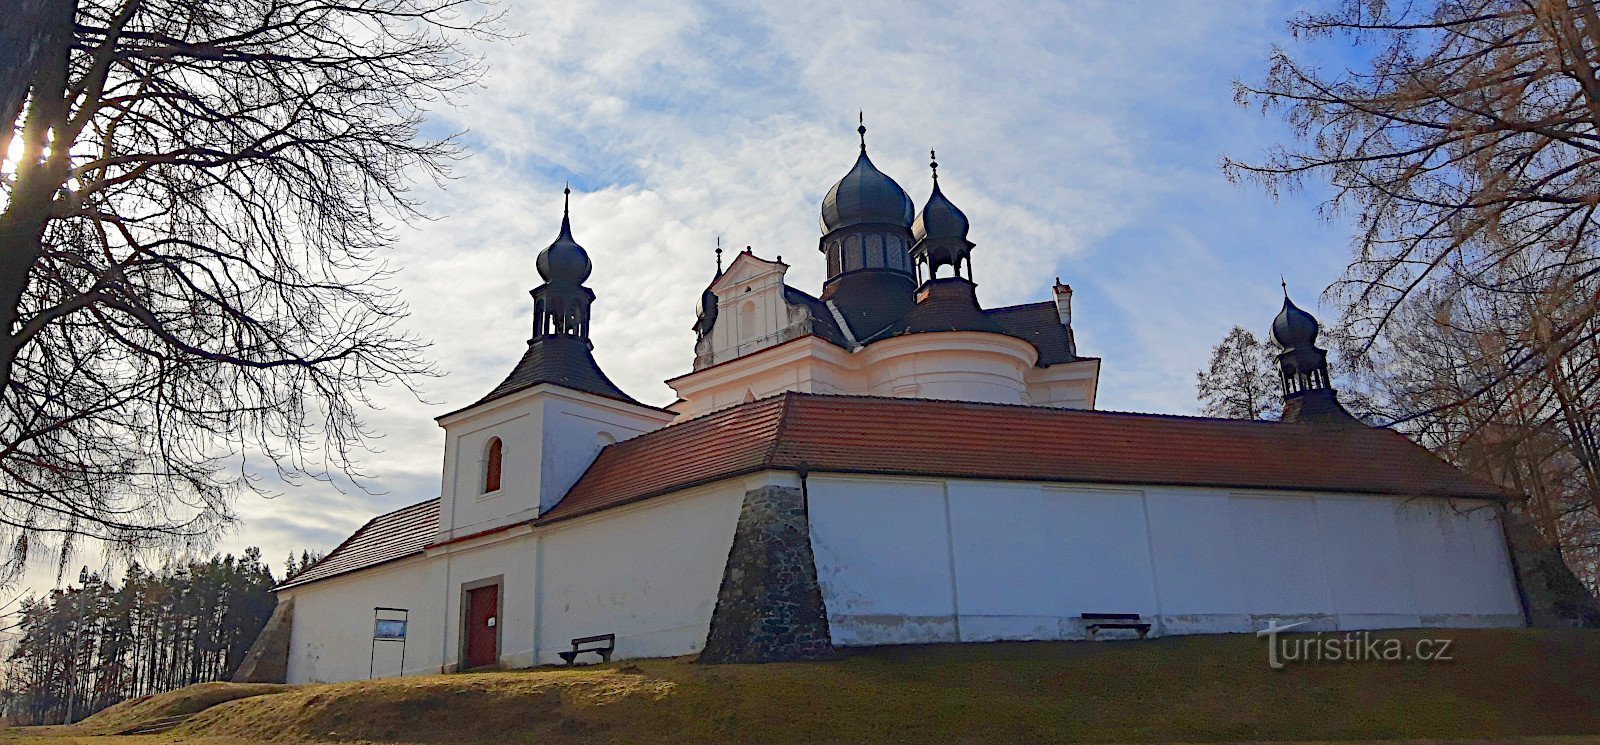 Trhové Sviny - hodočasnička barokna crkva Presvetog Trojstva